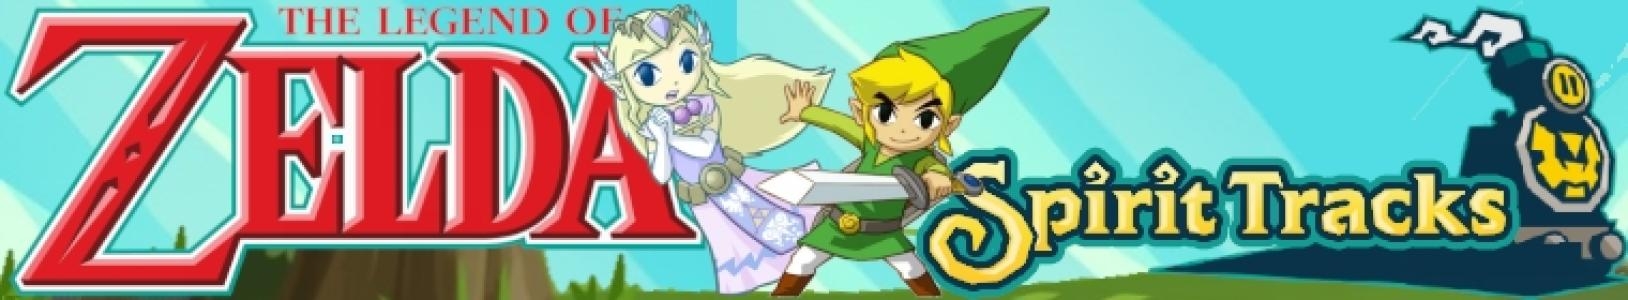 The Legend of Zelda: Spirit Tracks [Limited Edition] banner